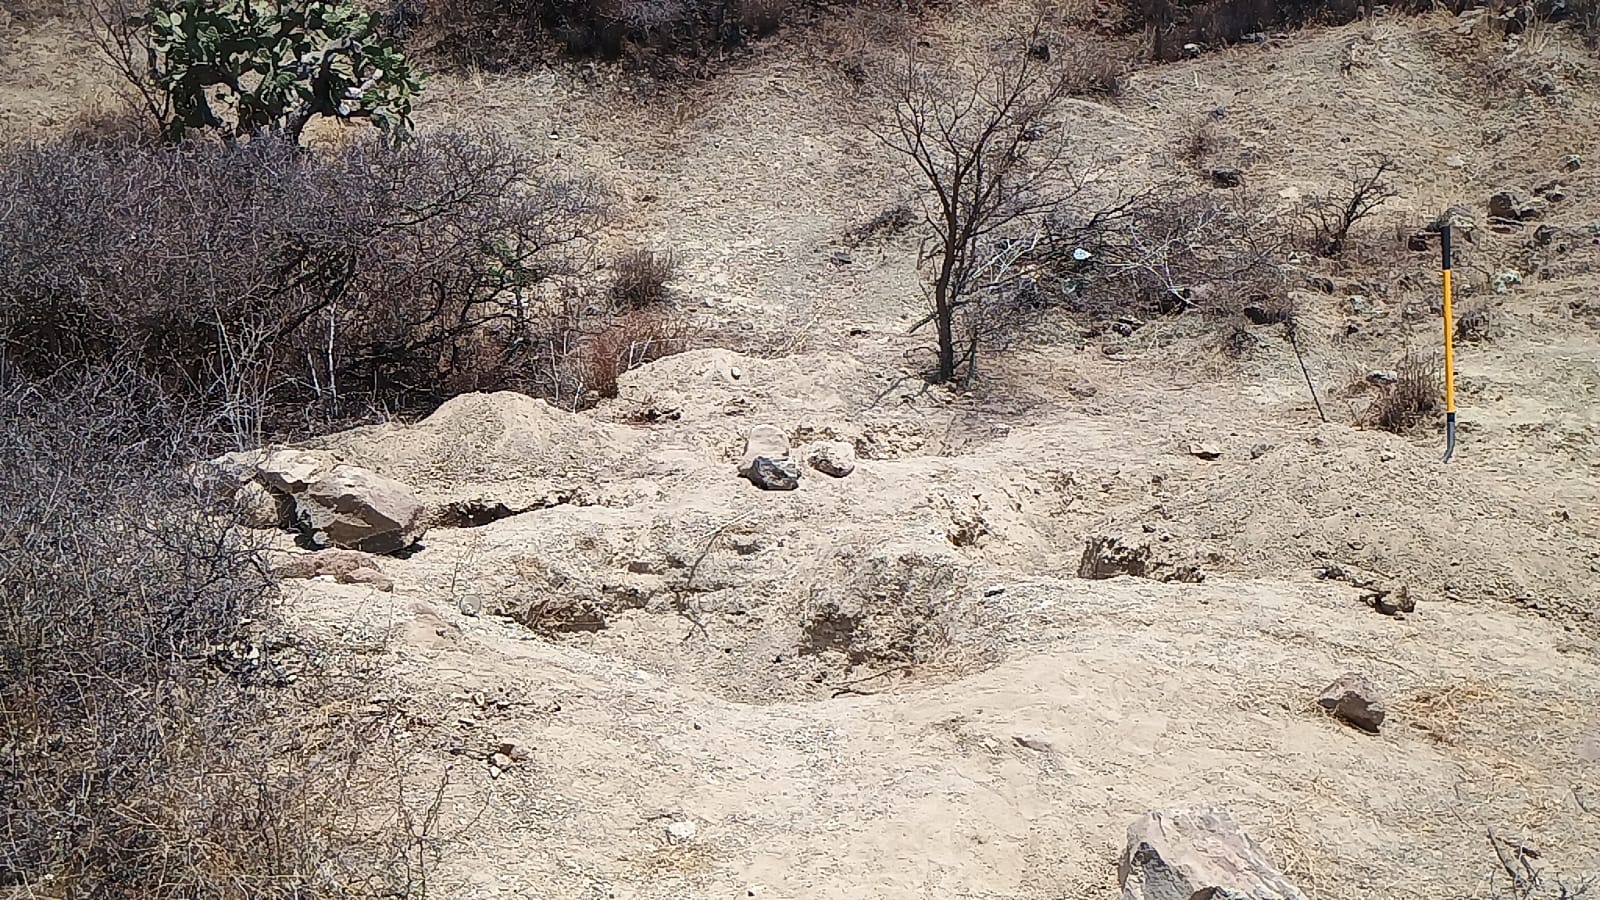 Localizan restos humanos enterrados en Santa Barbara La Cueva en San Juan del Río